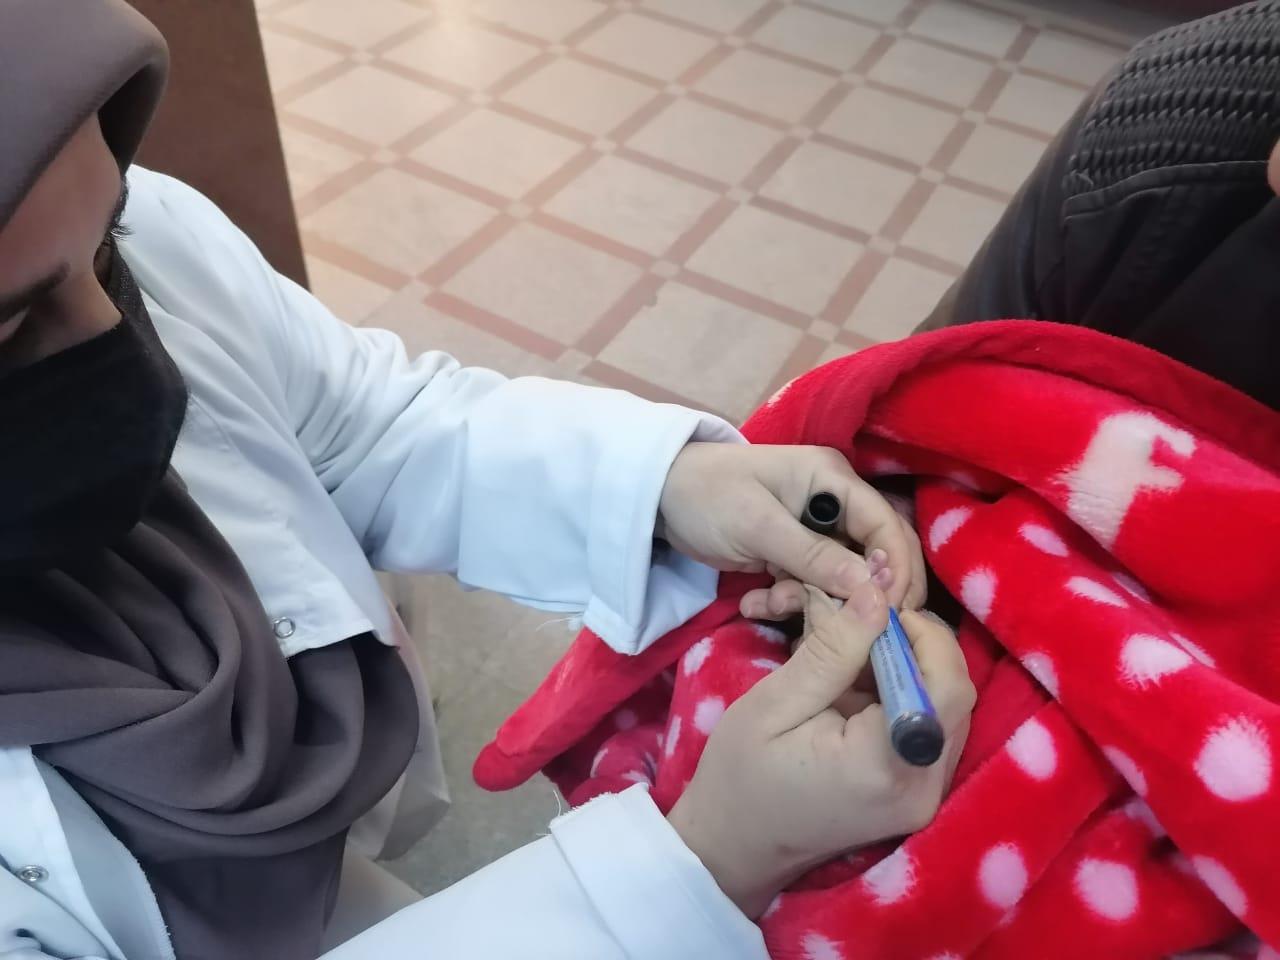 إرشادات لأولياء الأمور عند تطعيم الأطفال